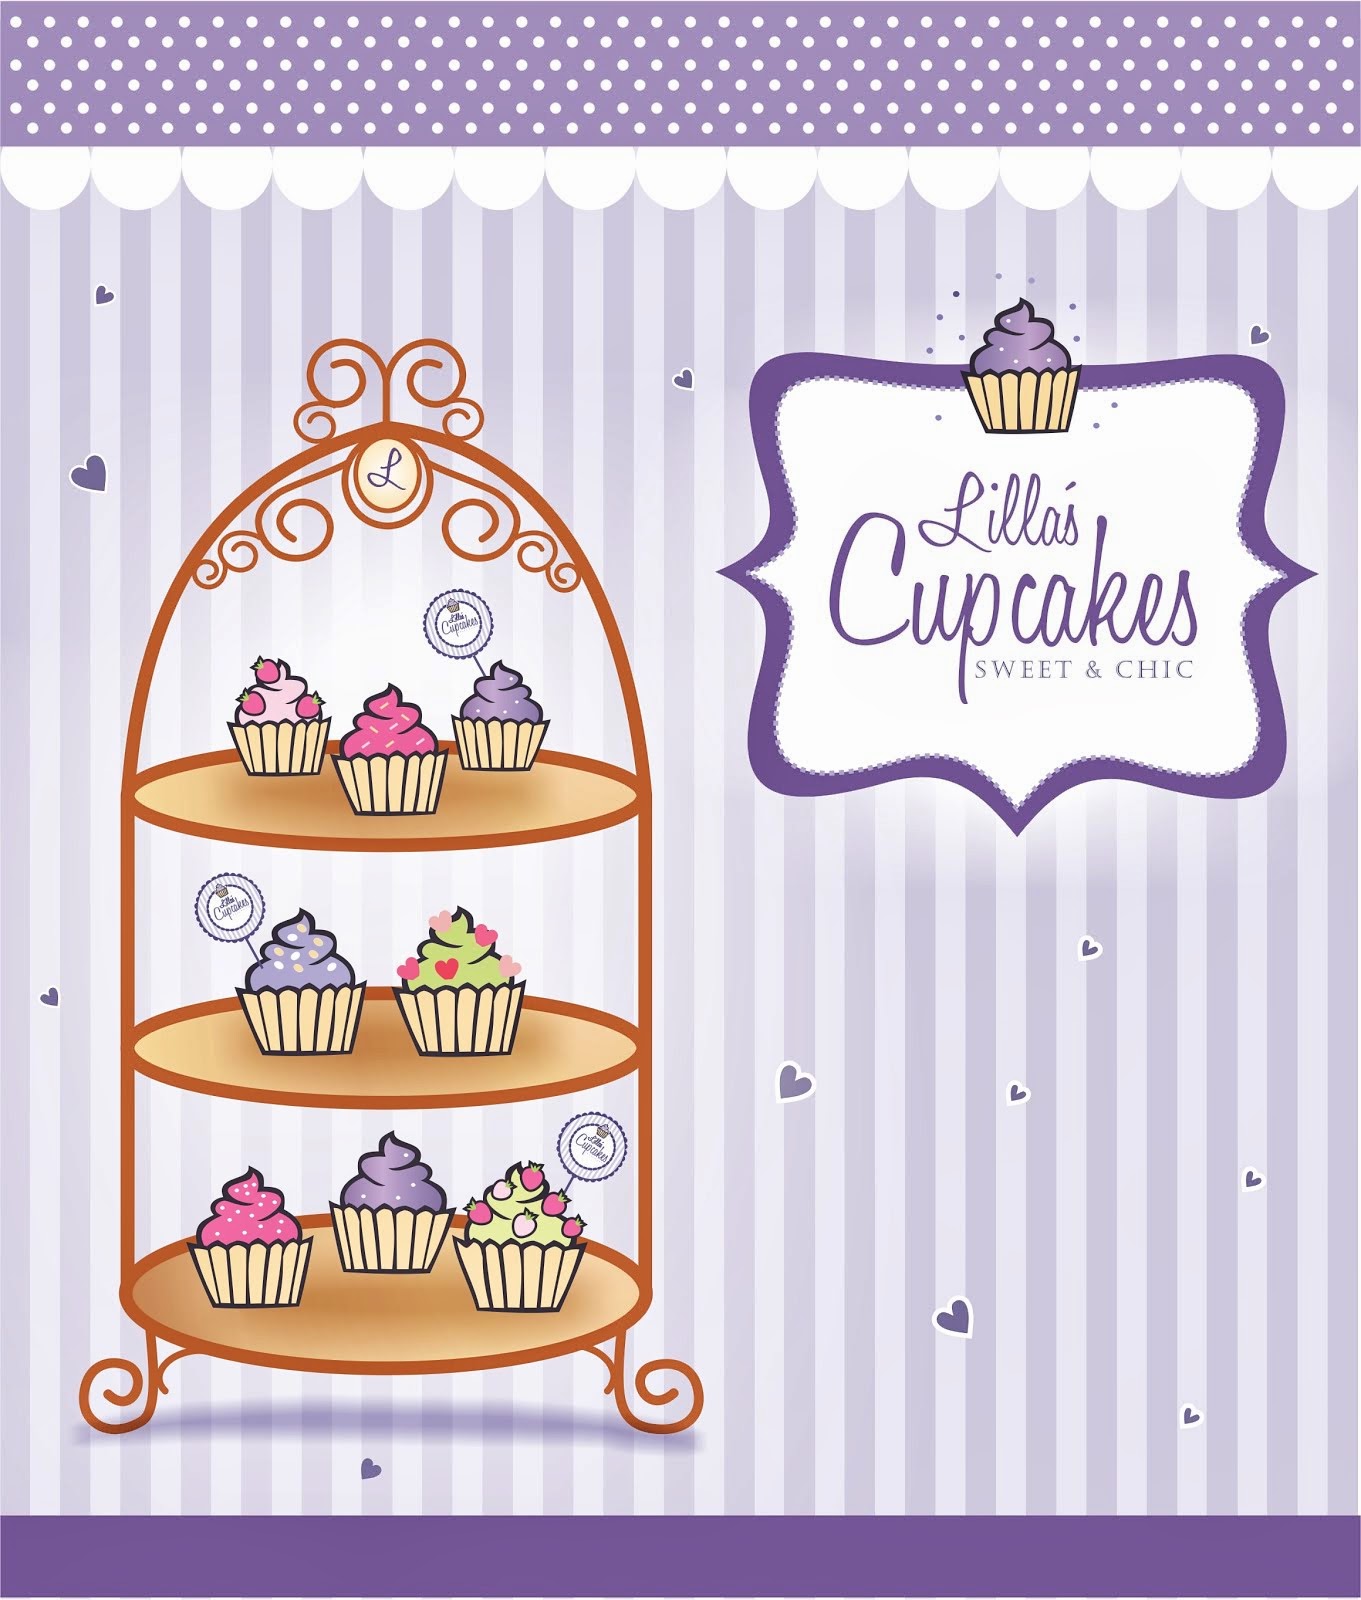 Lilla's Cupcakes